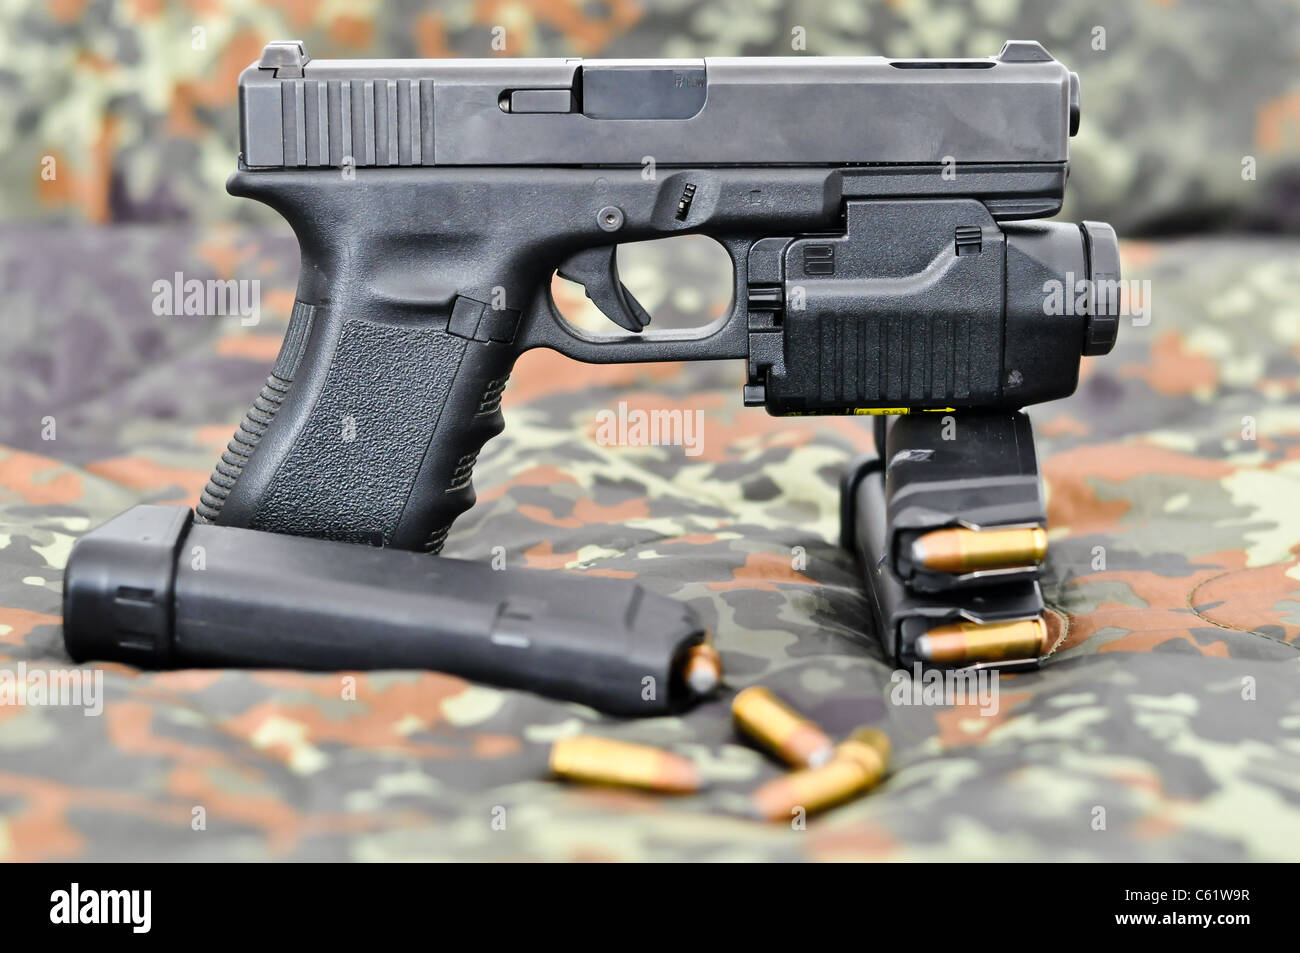 9mm militärische Handfeuerwaffe mit einem taktischen Laser/Licht-Modul auf Tarnung Stockfoto